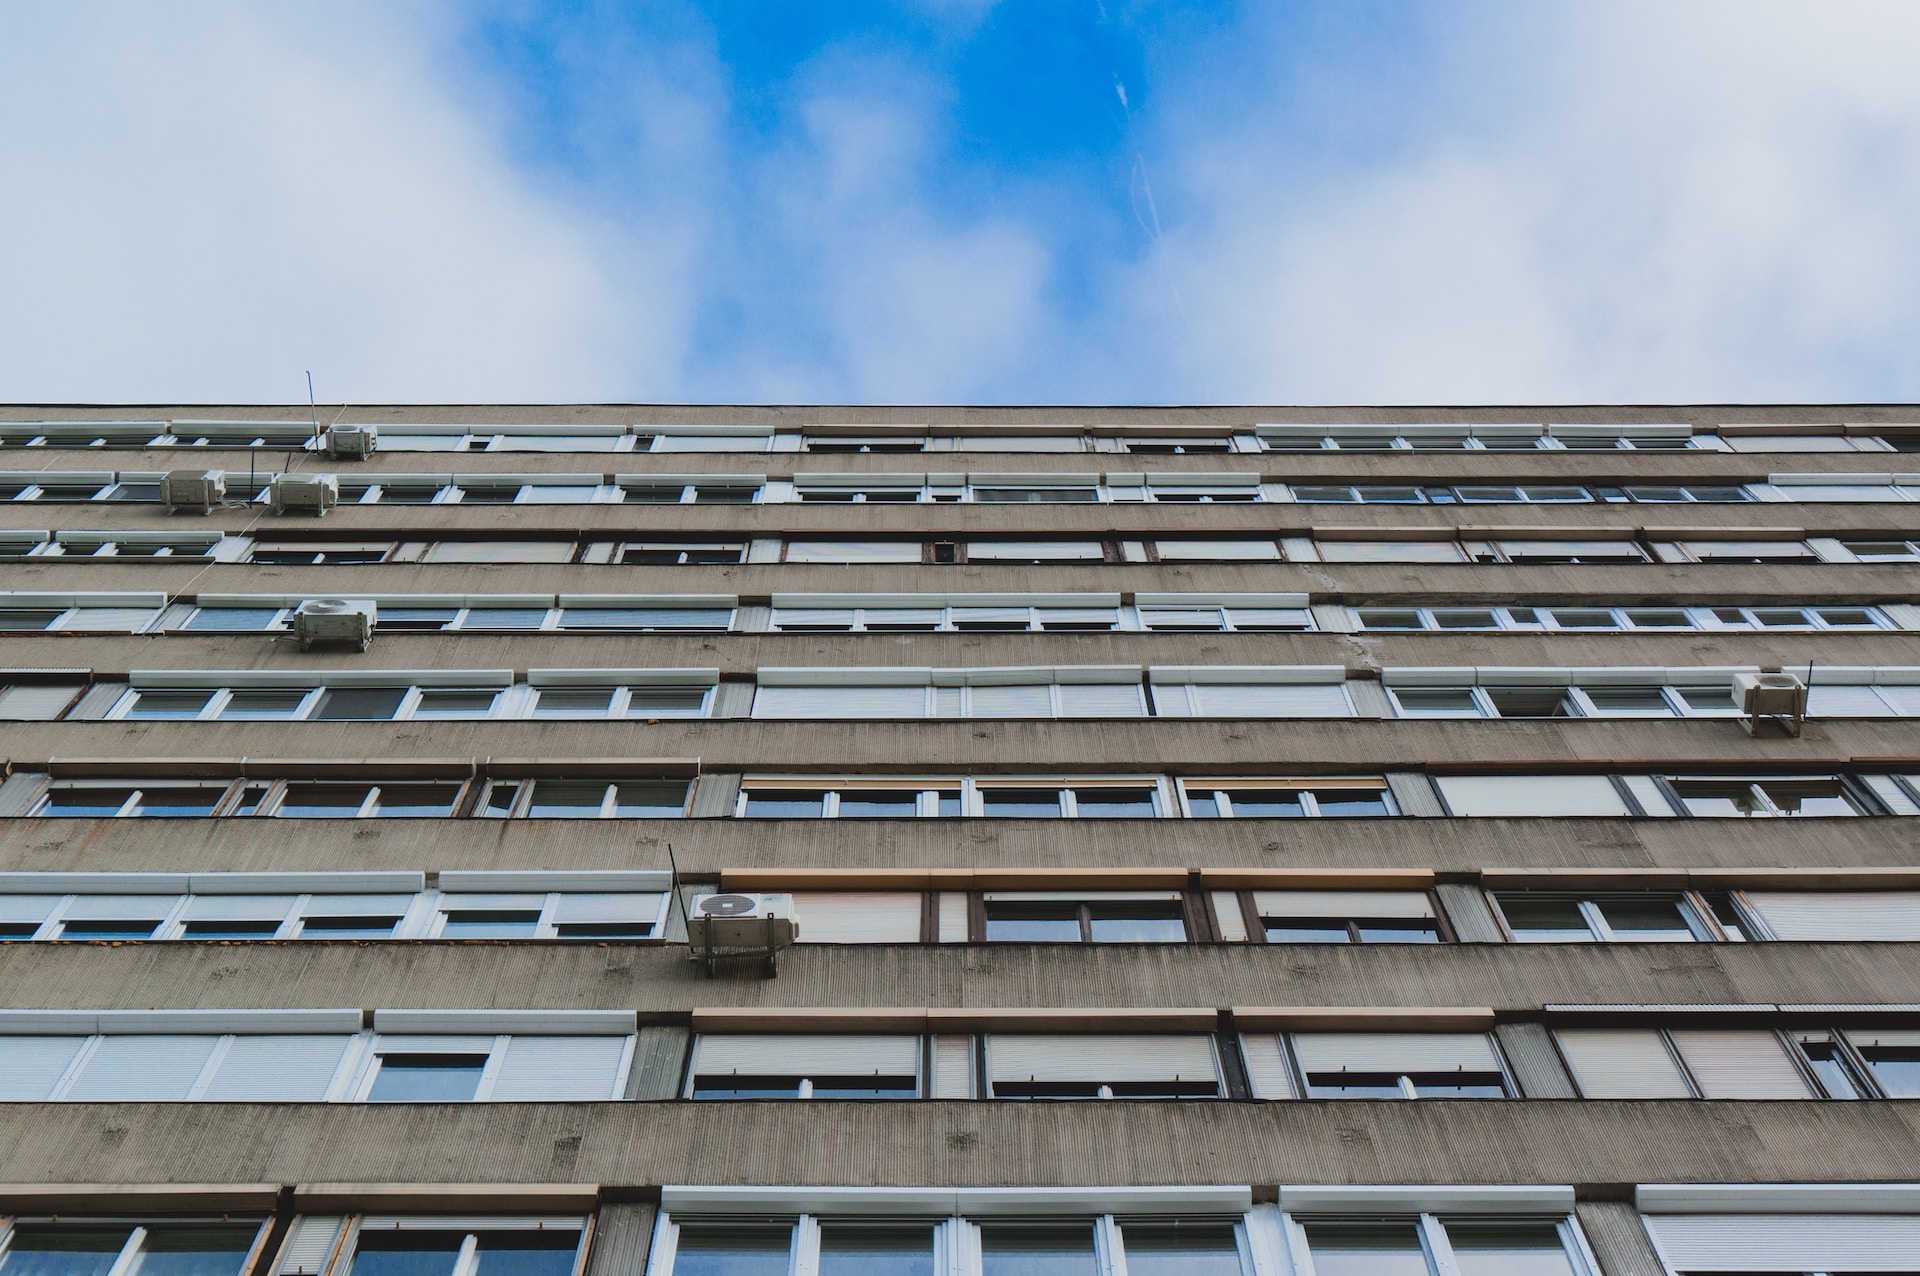 an upward shot of a grey block of flats